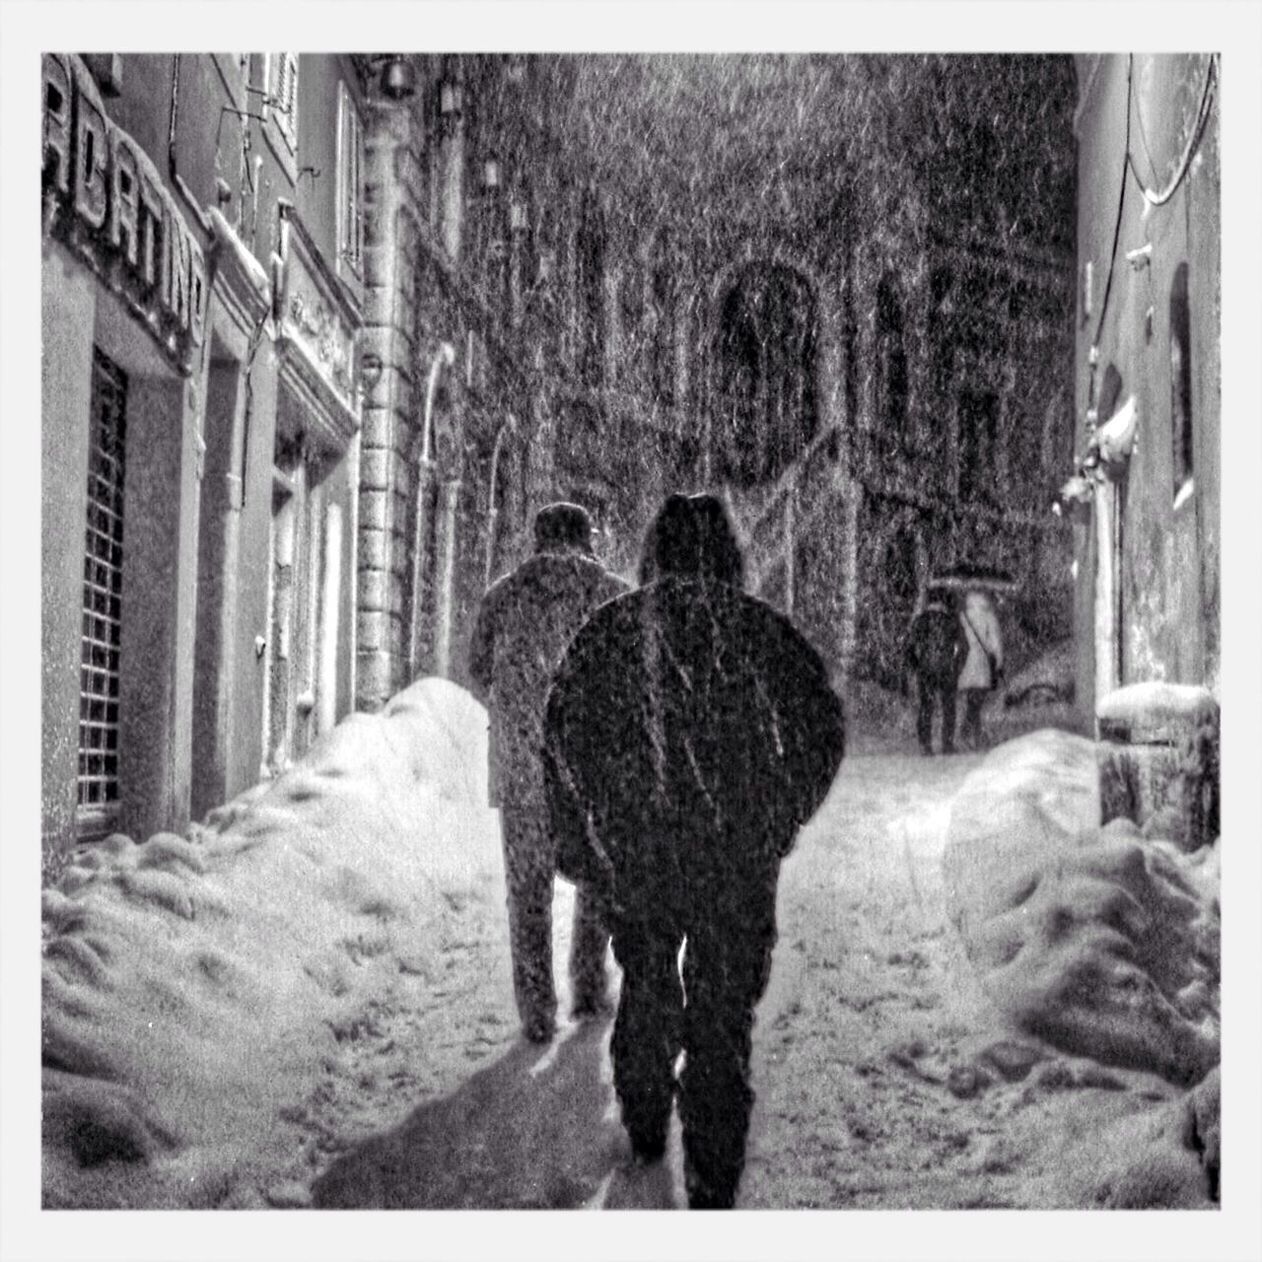 People walking in street while snowing